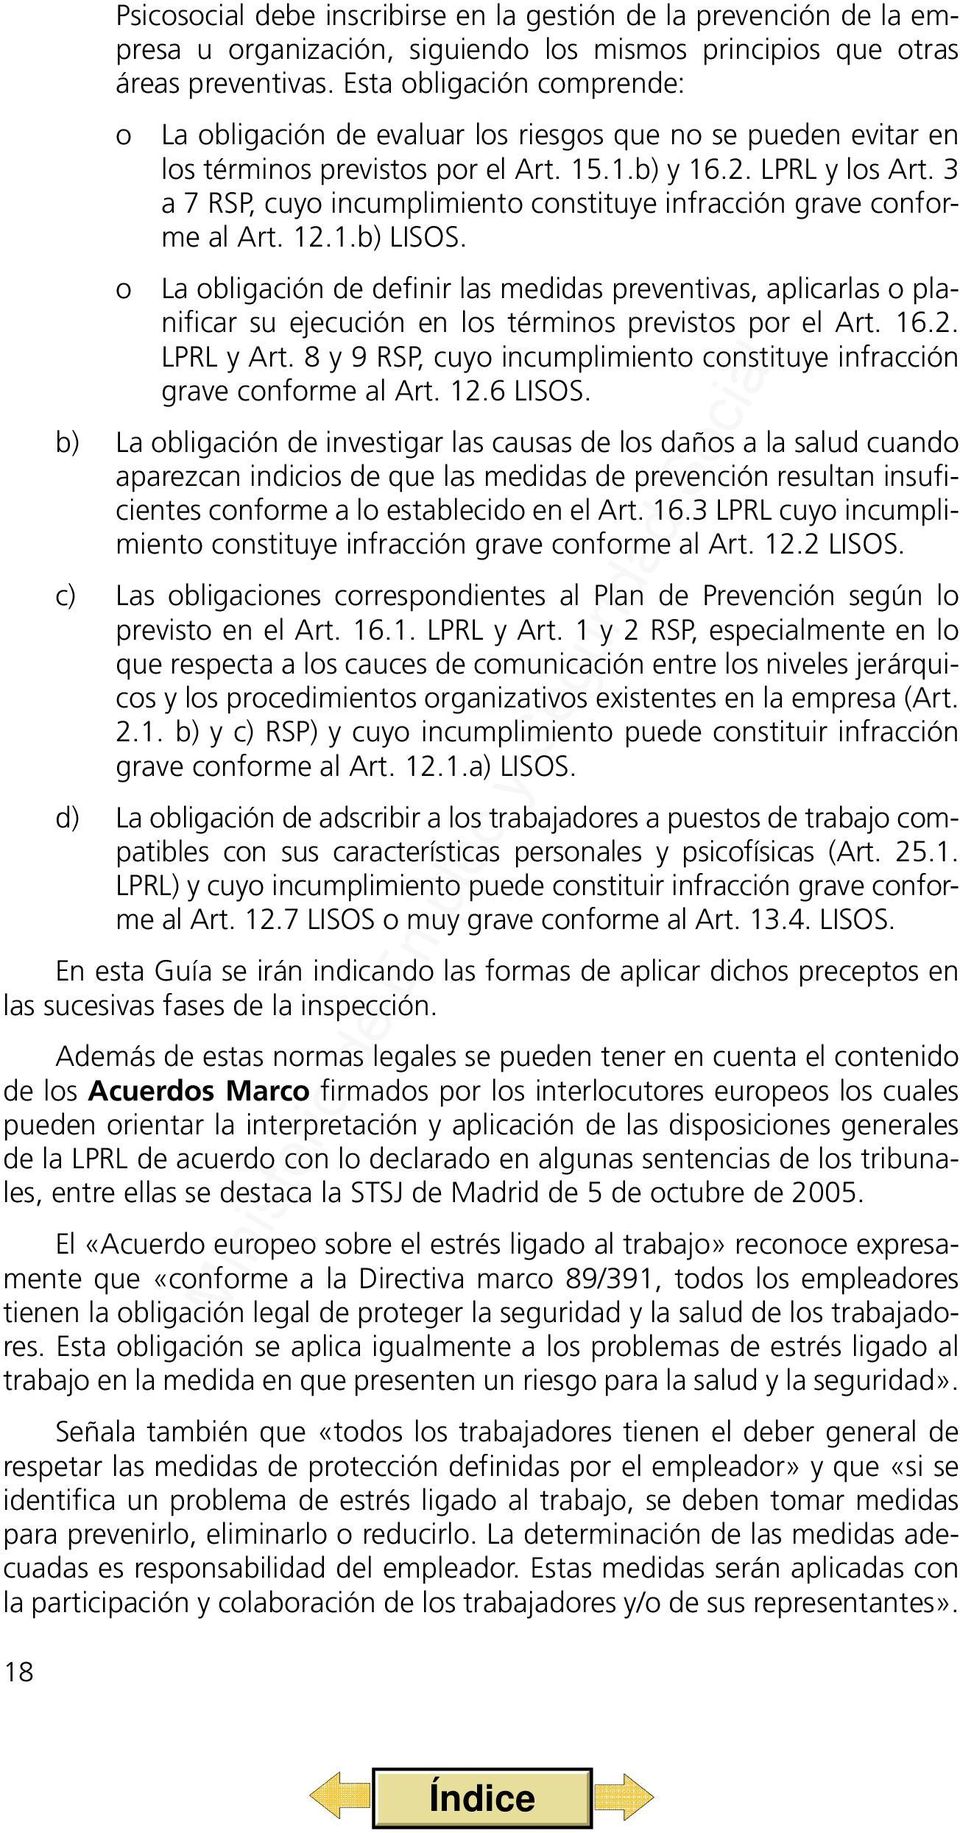 3 a 7 RSP, cuyo incumplimiento constituye infracción grave conforme al Art. 12.1.b) LISOS.